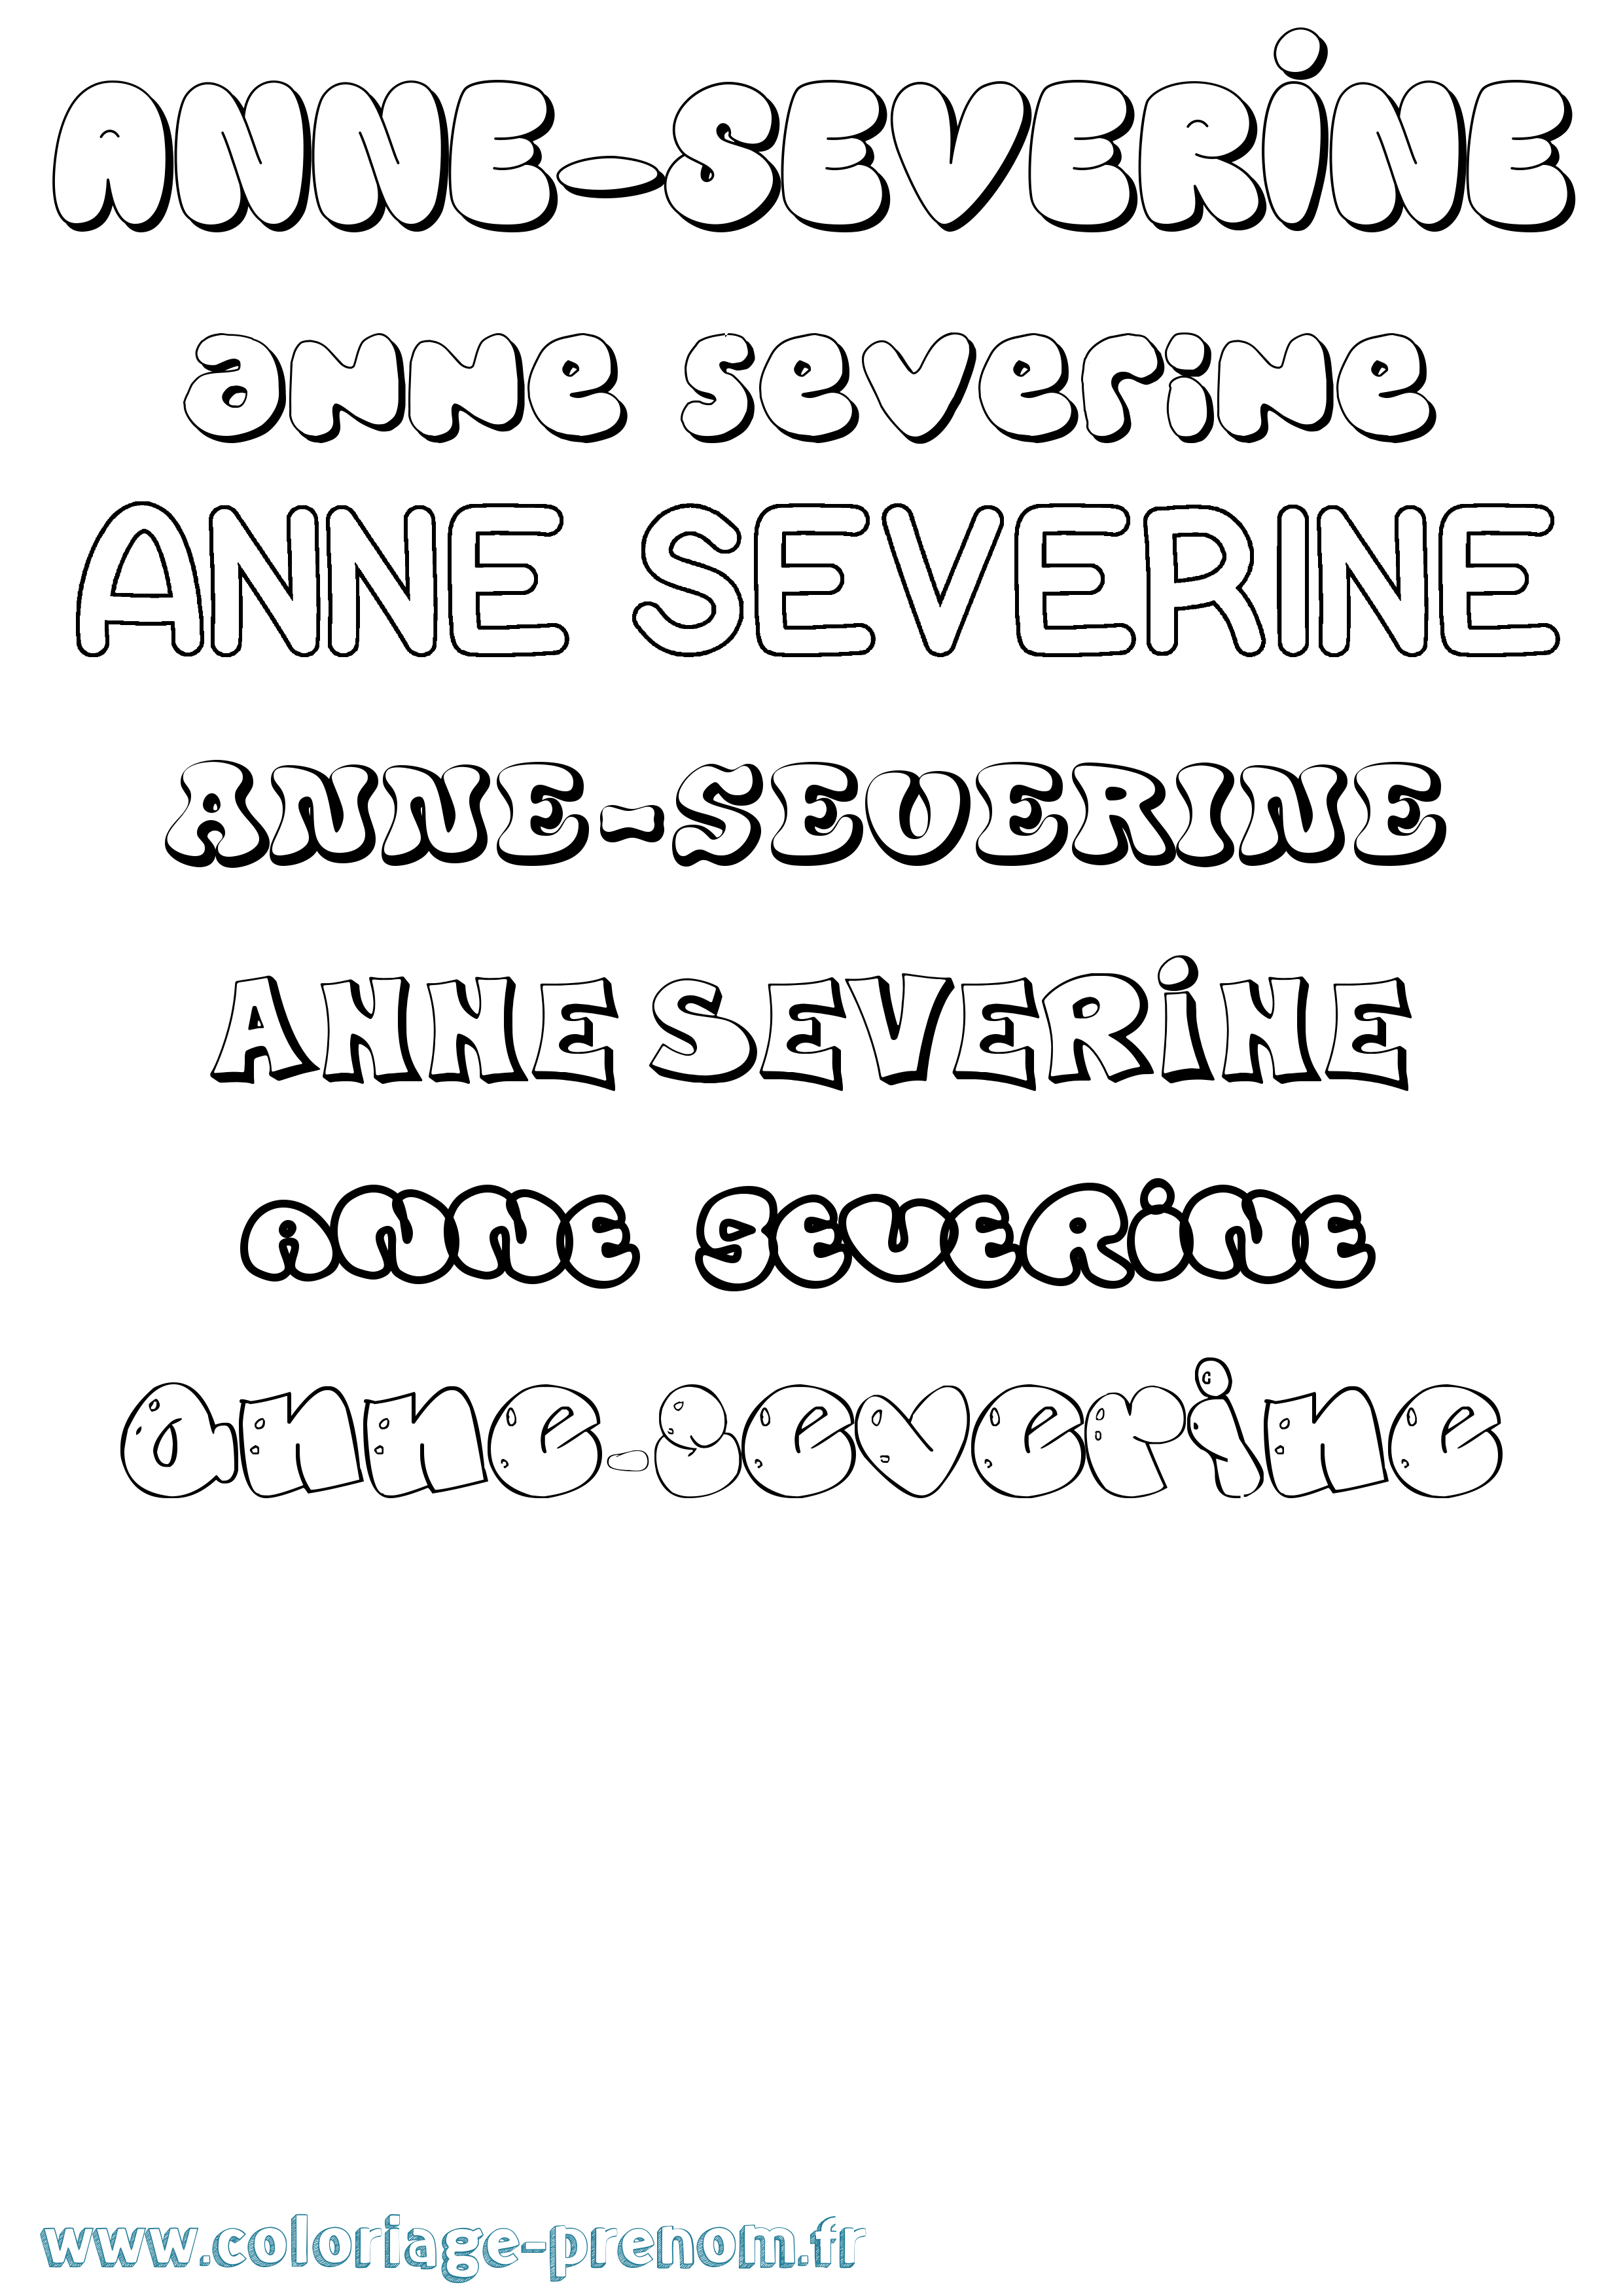 Coloriage prénom Anne-Severine Bubble